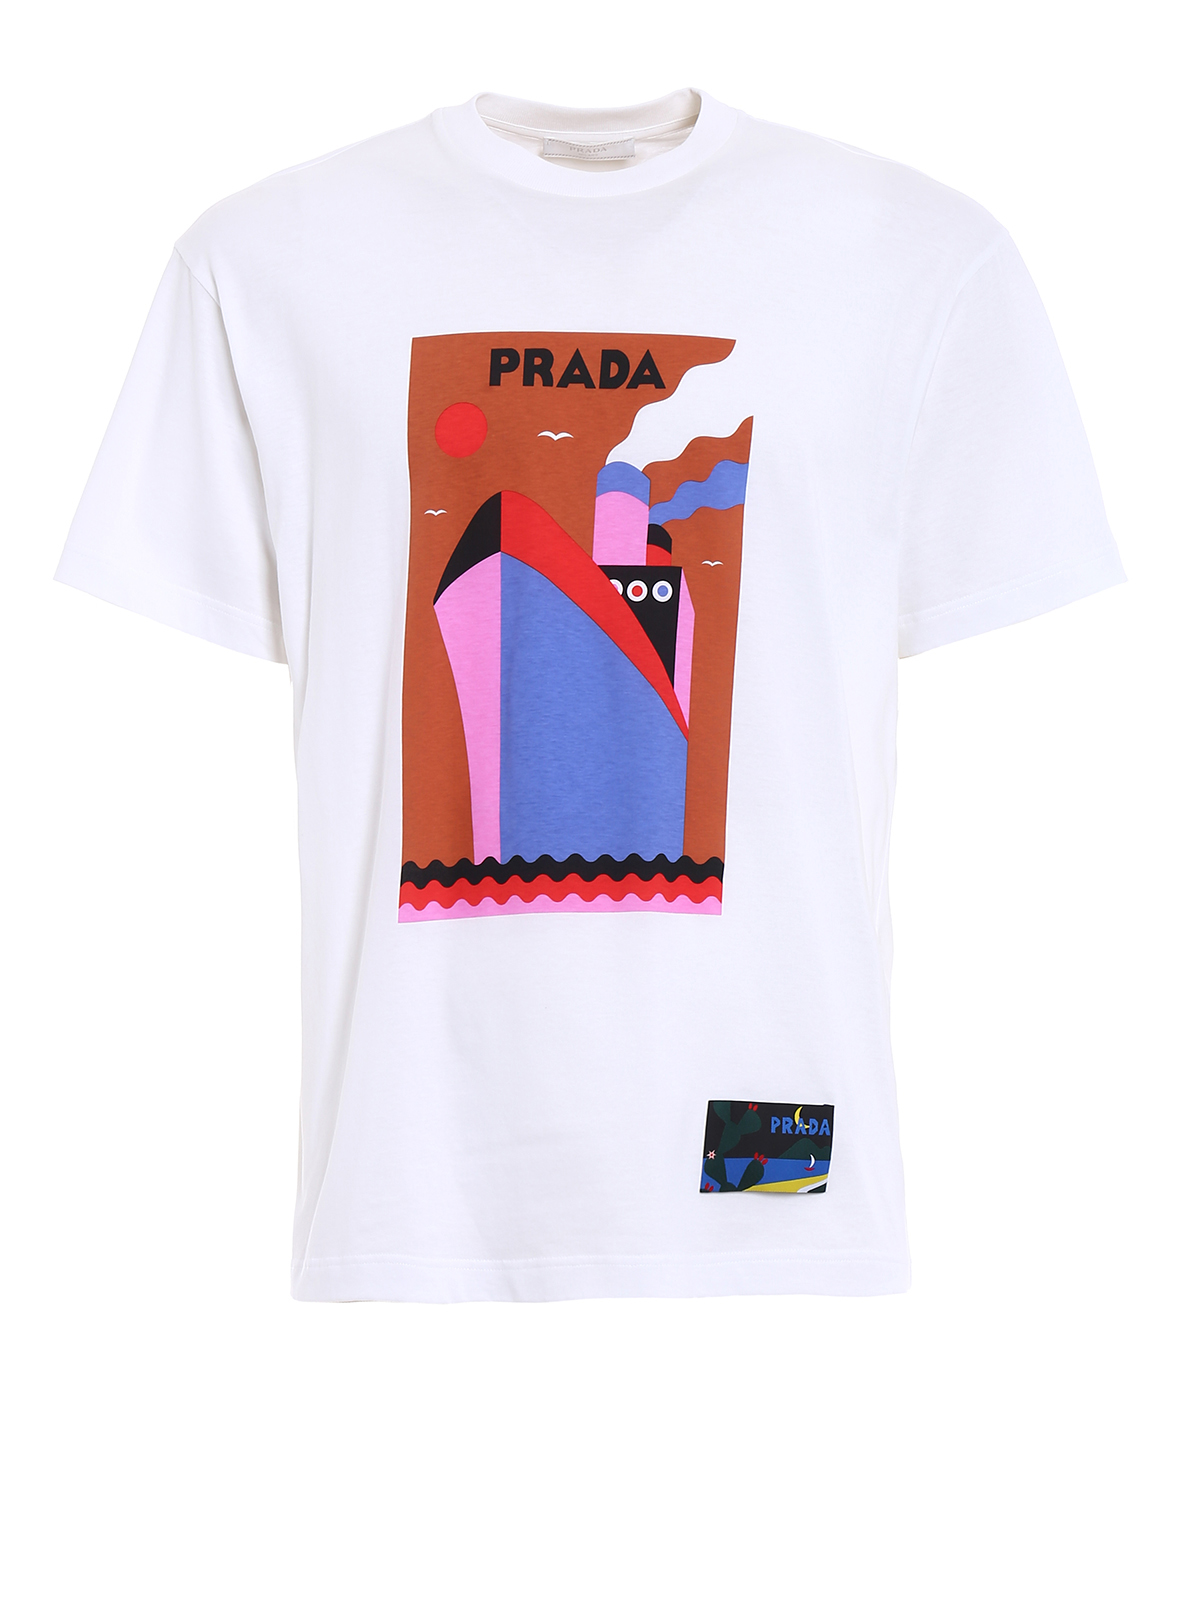 Tシャツ Prada - Tシャツ - 白 - UJN3991QGAF0009 | iKRIX shop online